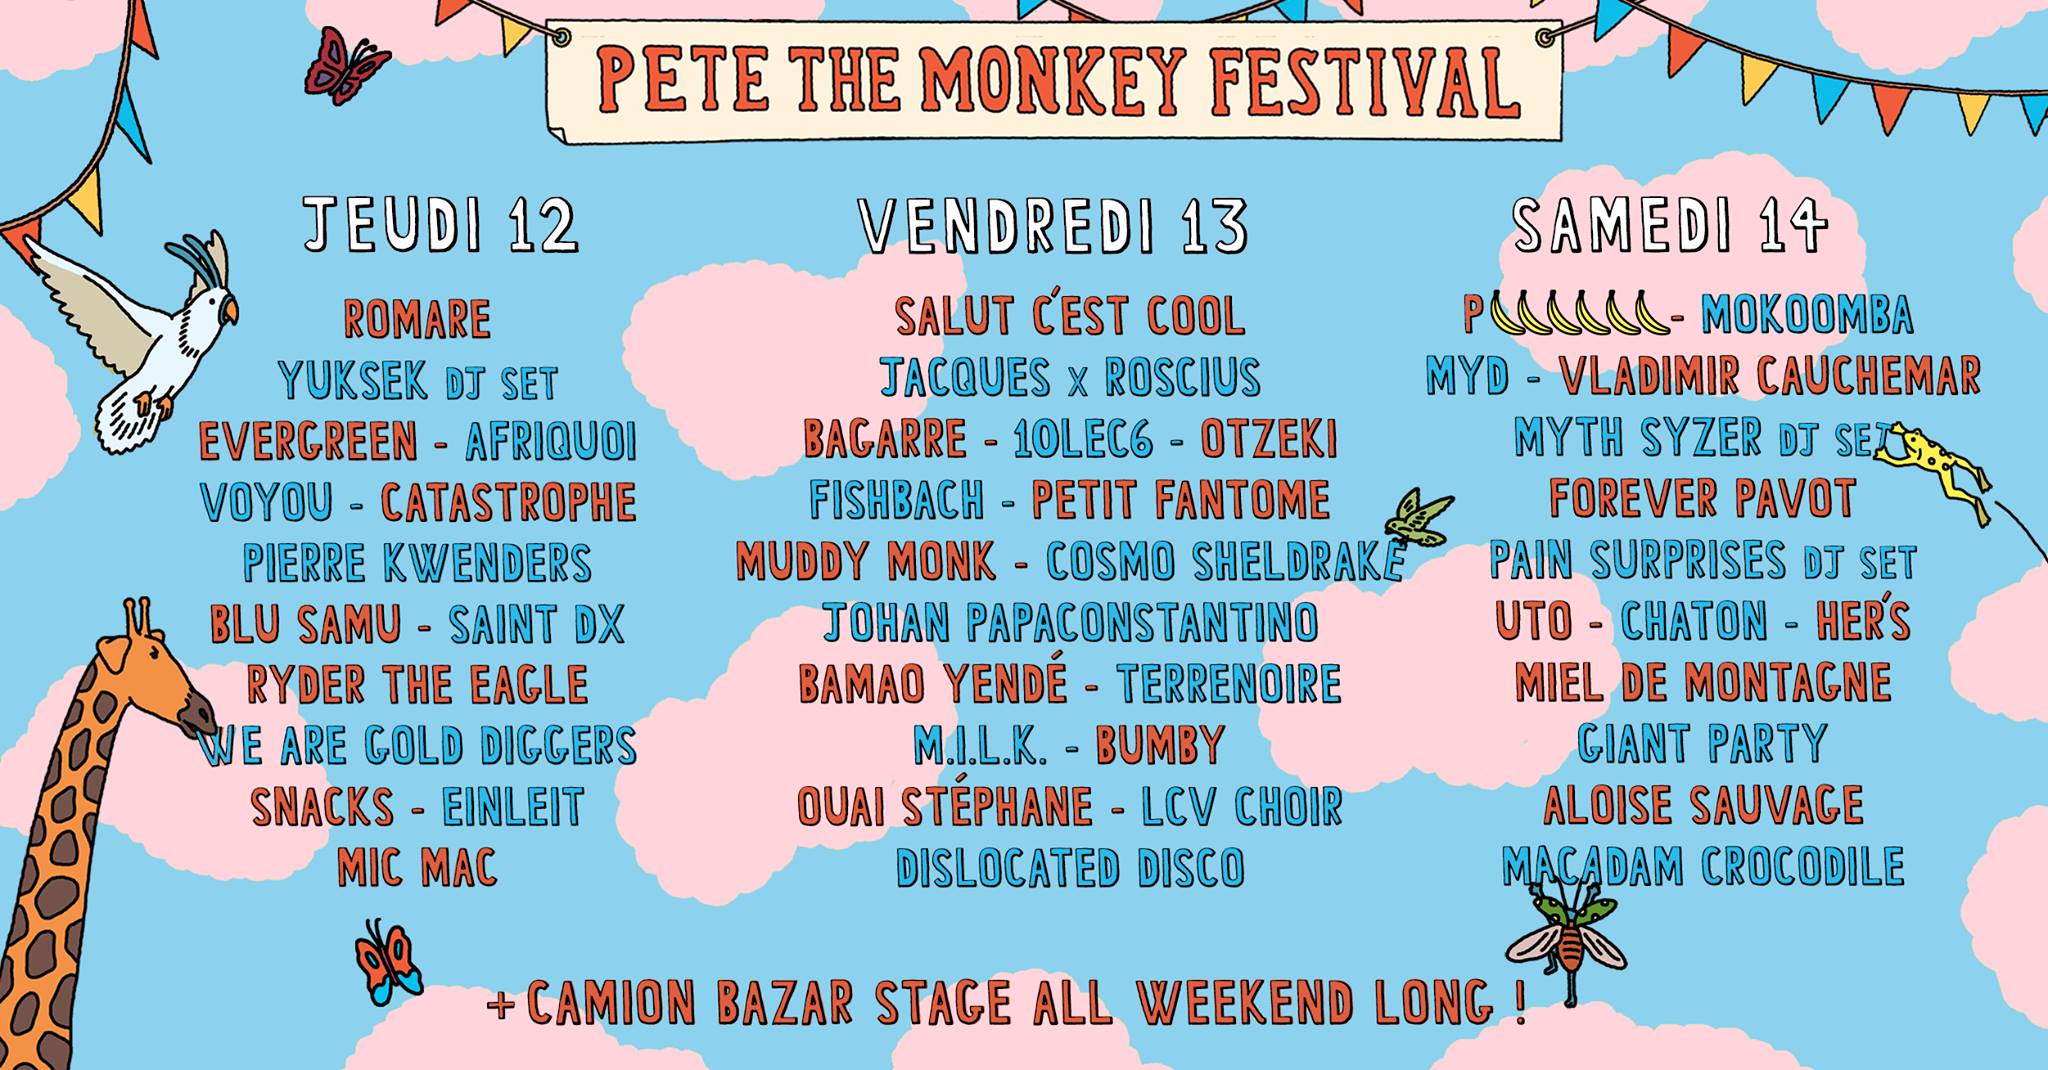 Le monde de la pop a rendez-vous à Pete the Monkey